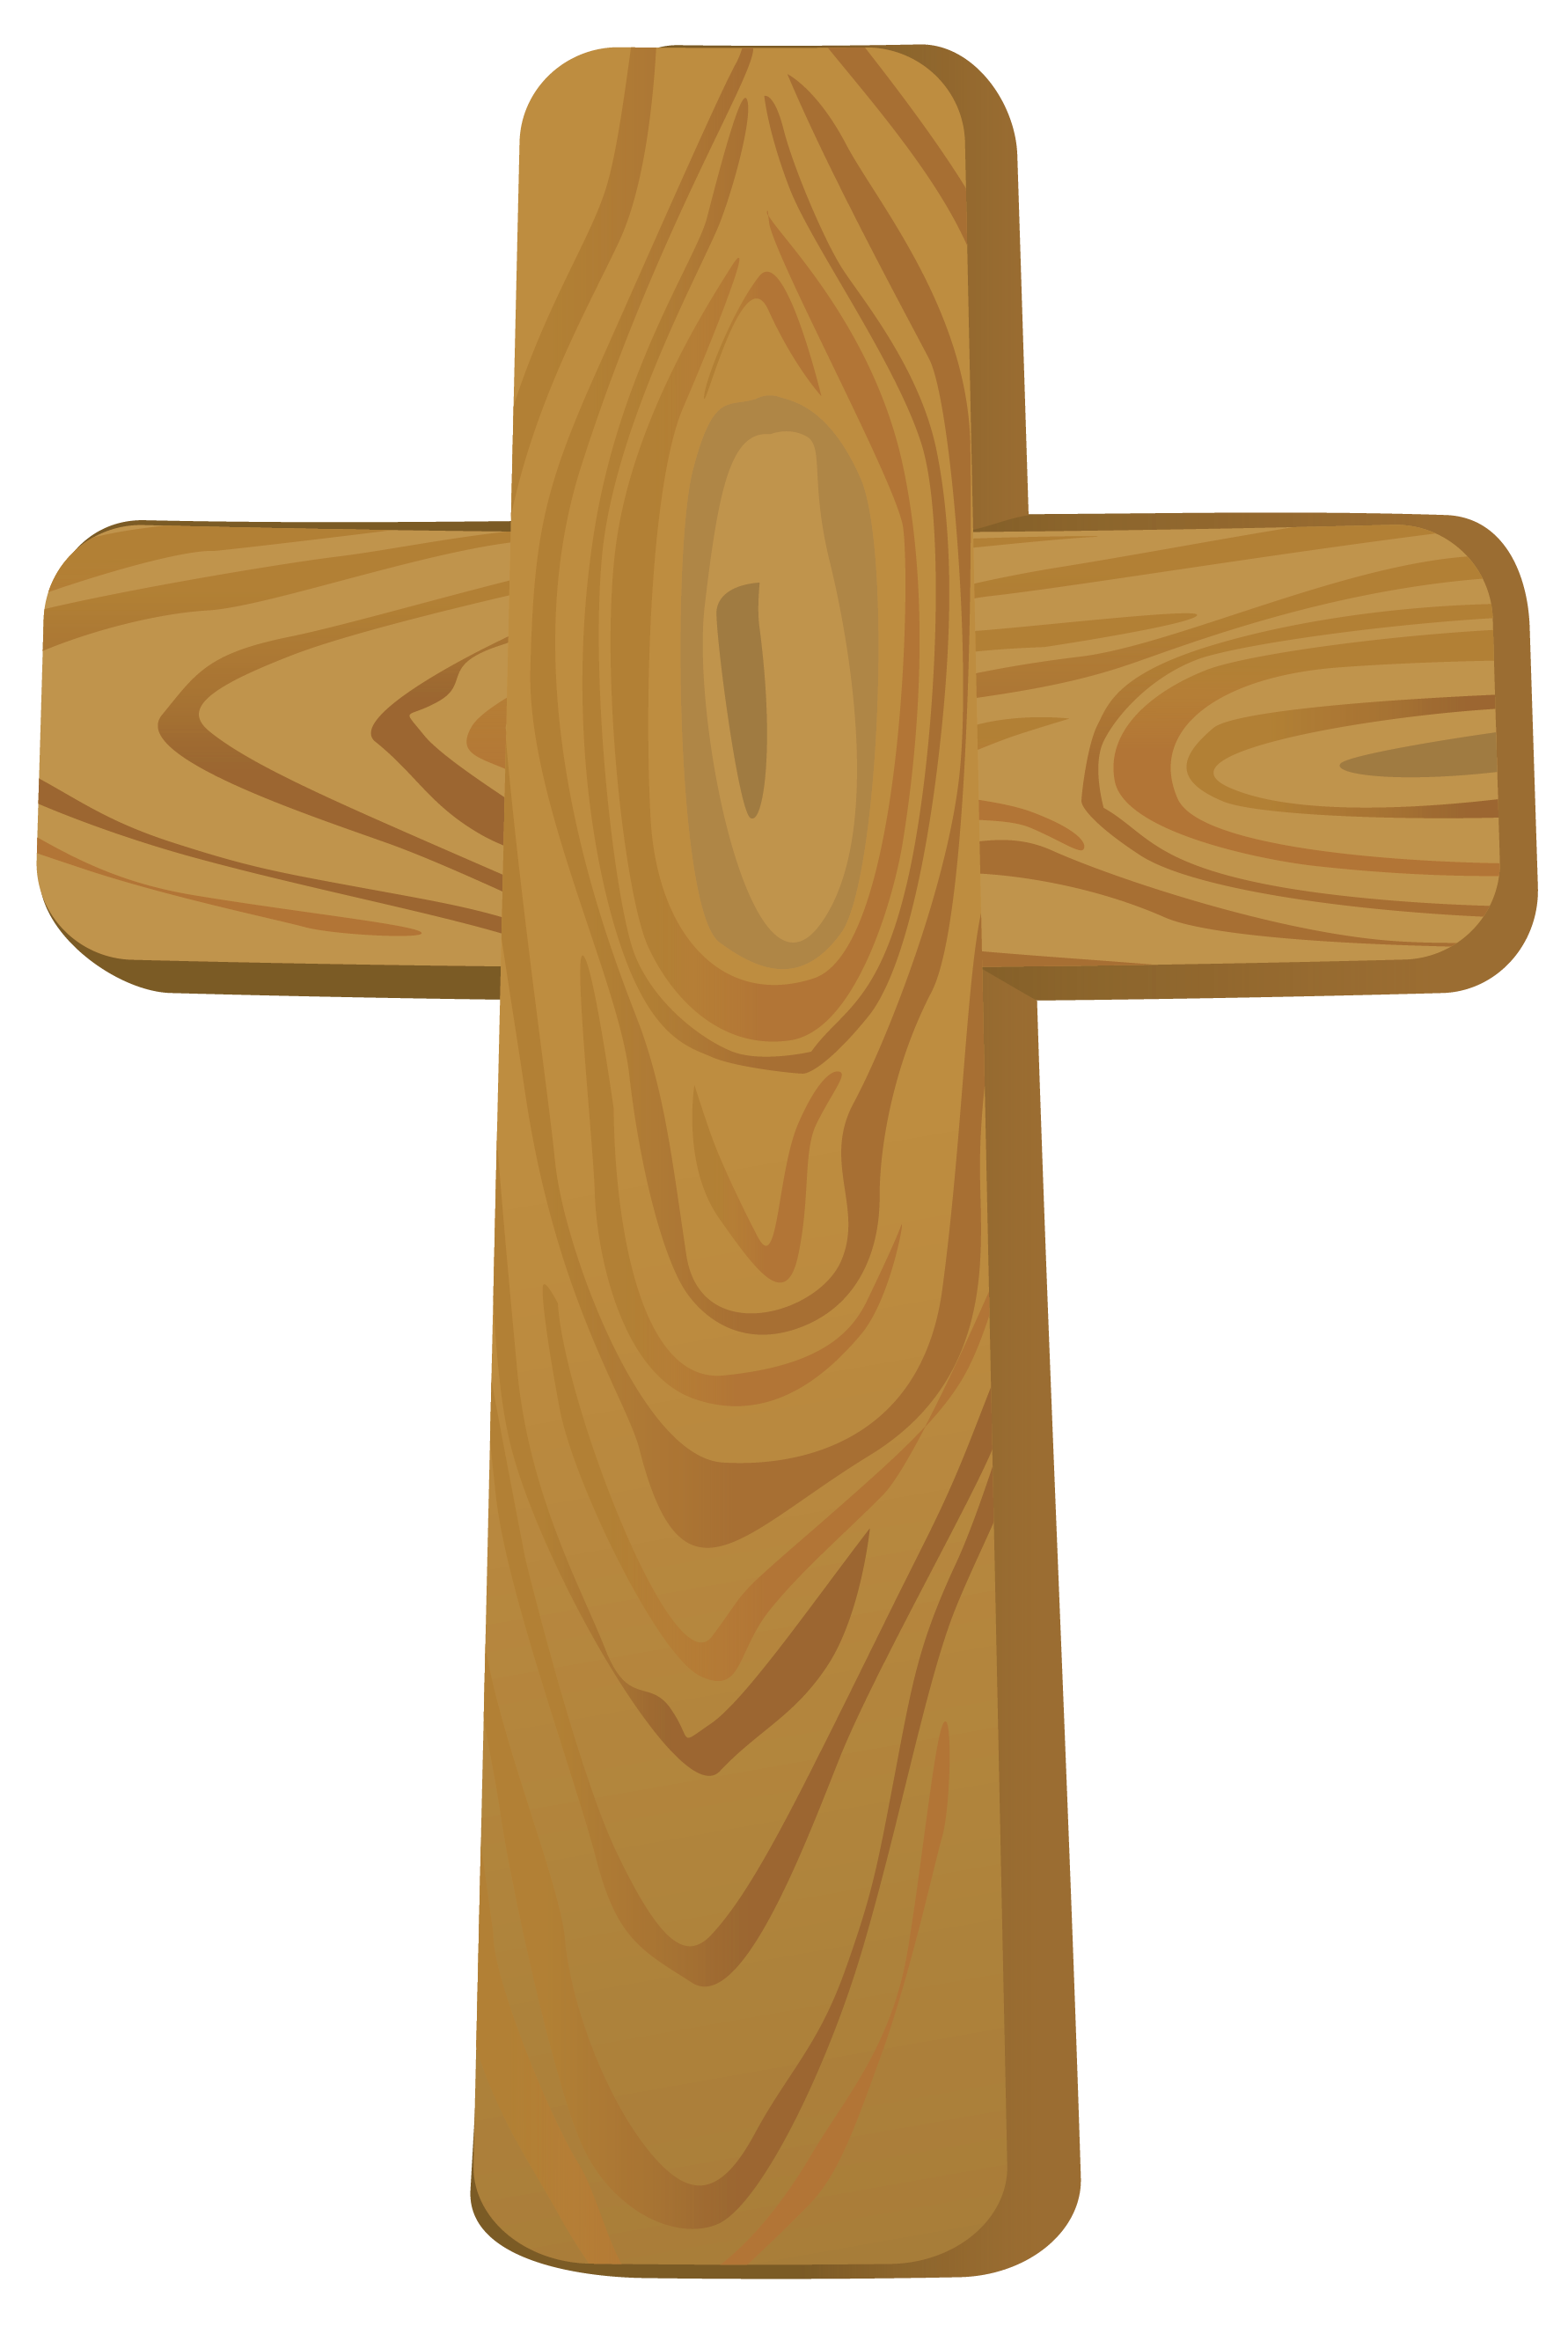 Wooden cross clipart.